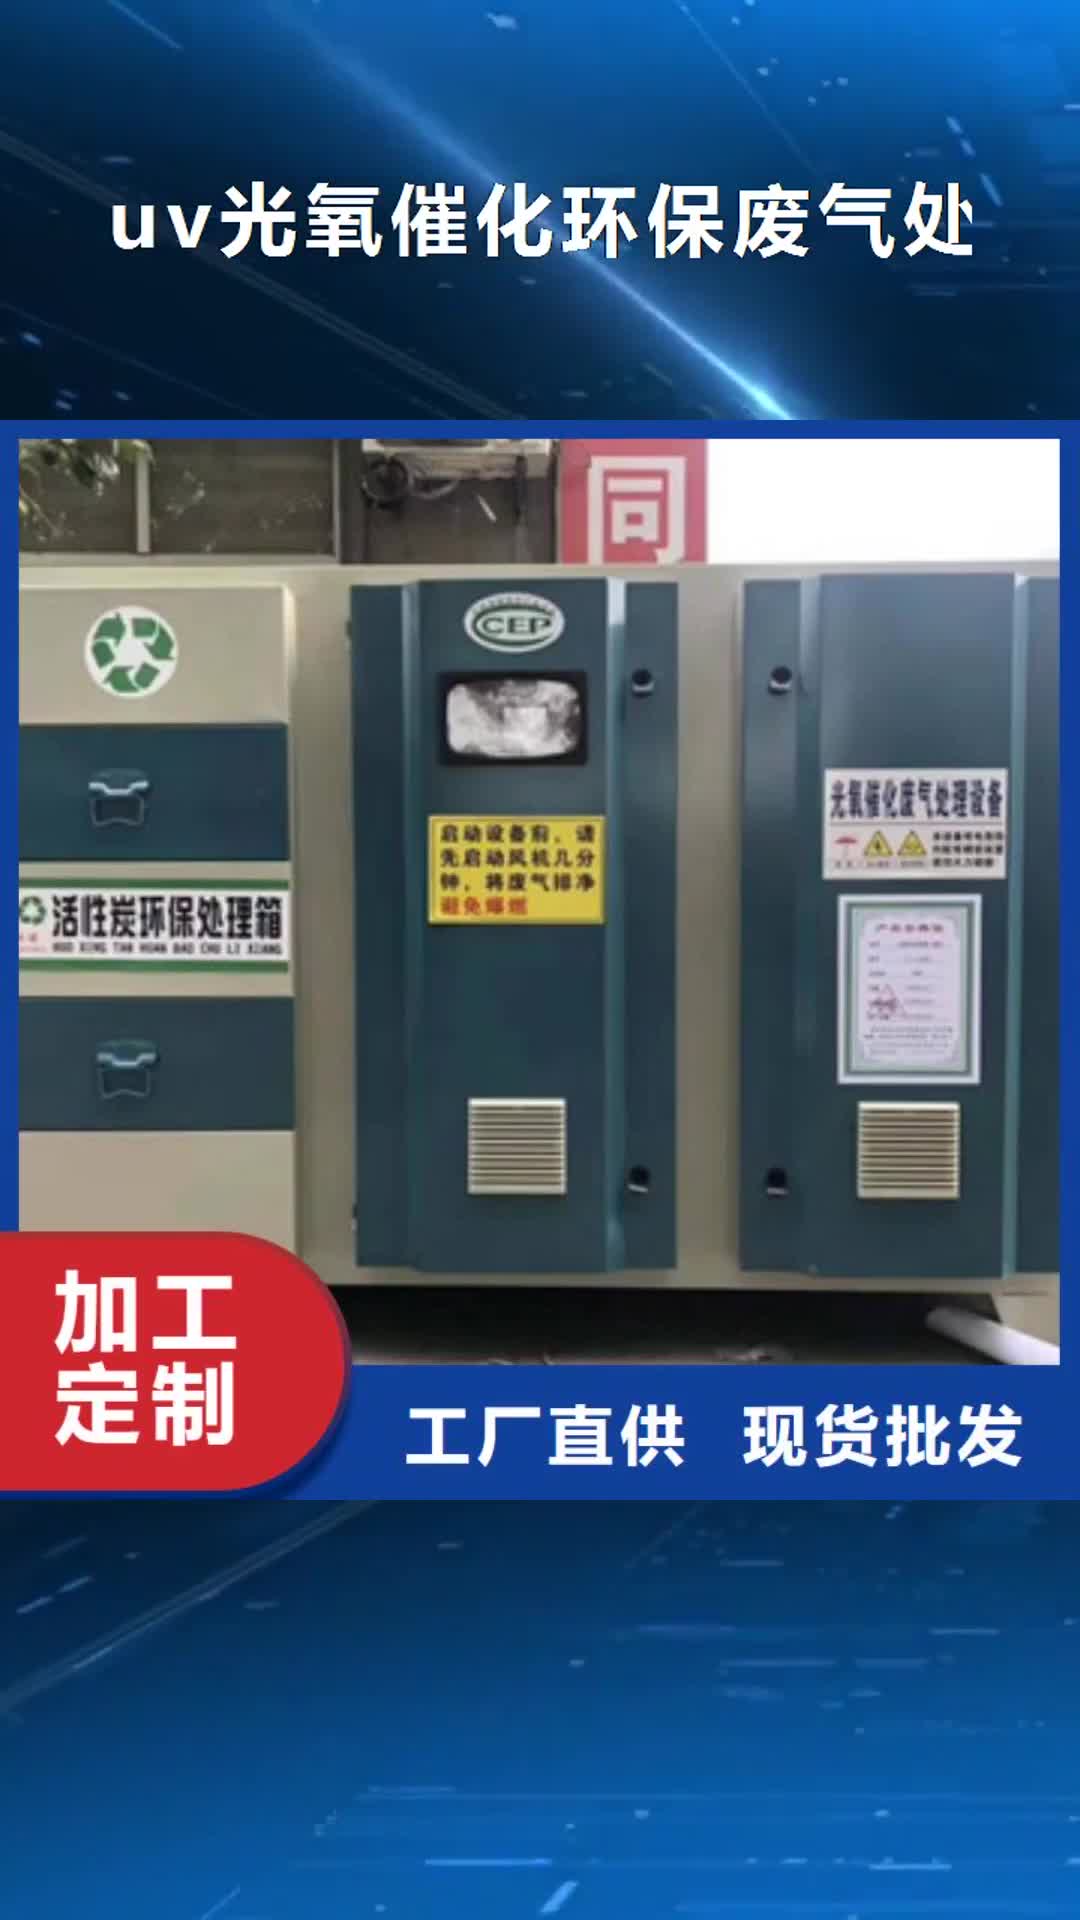 台湾【uv光氧催化环保废气处理设备】-移动伸缩喷漆房好货采购